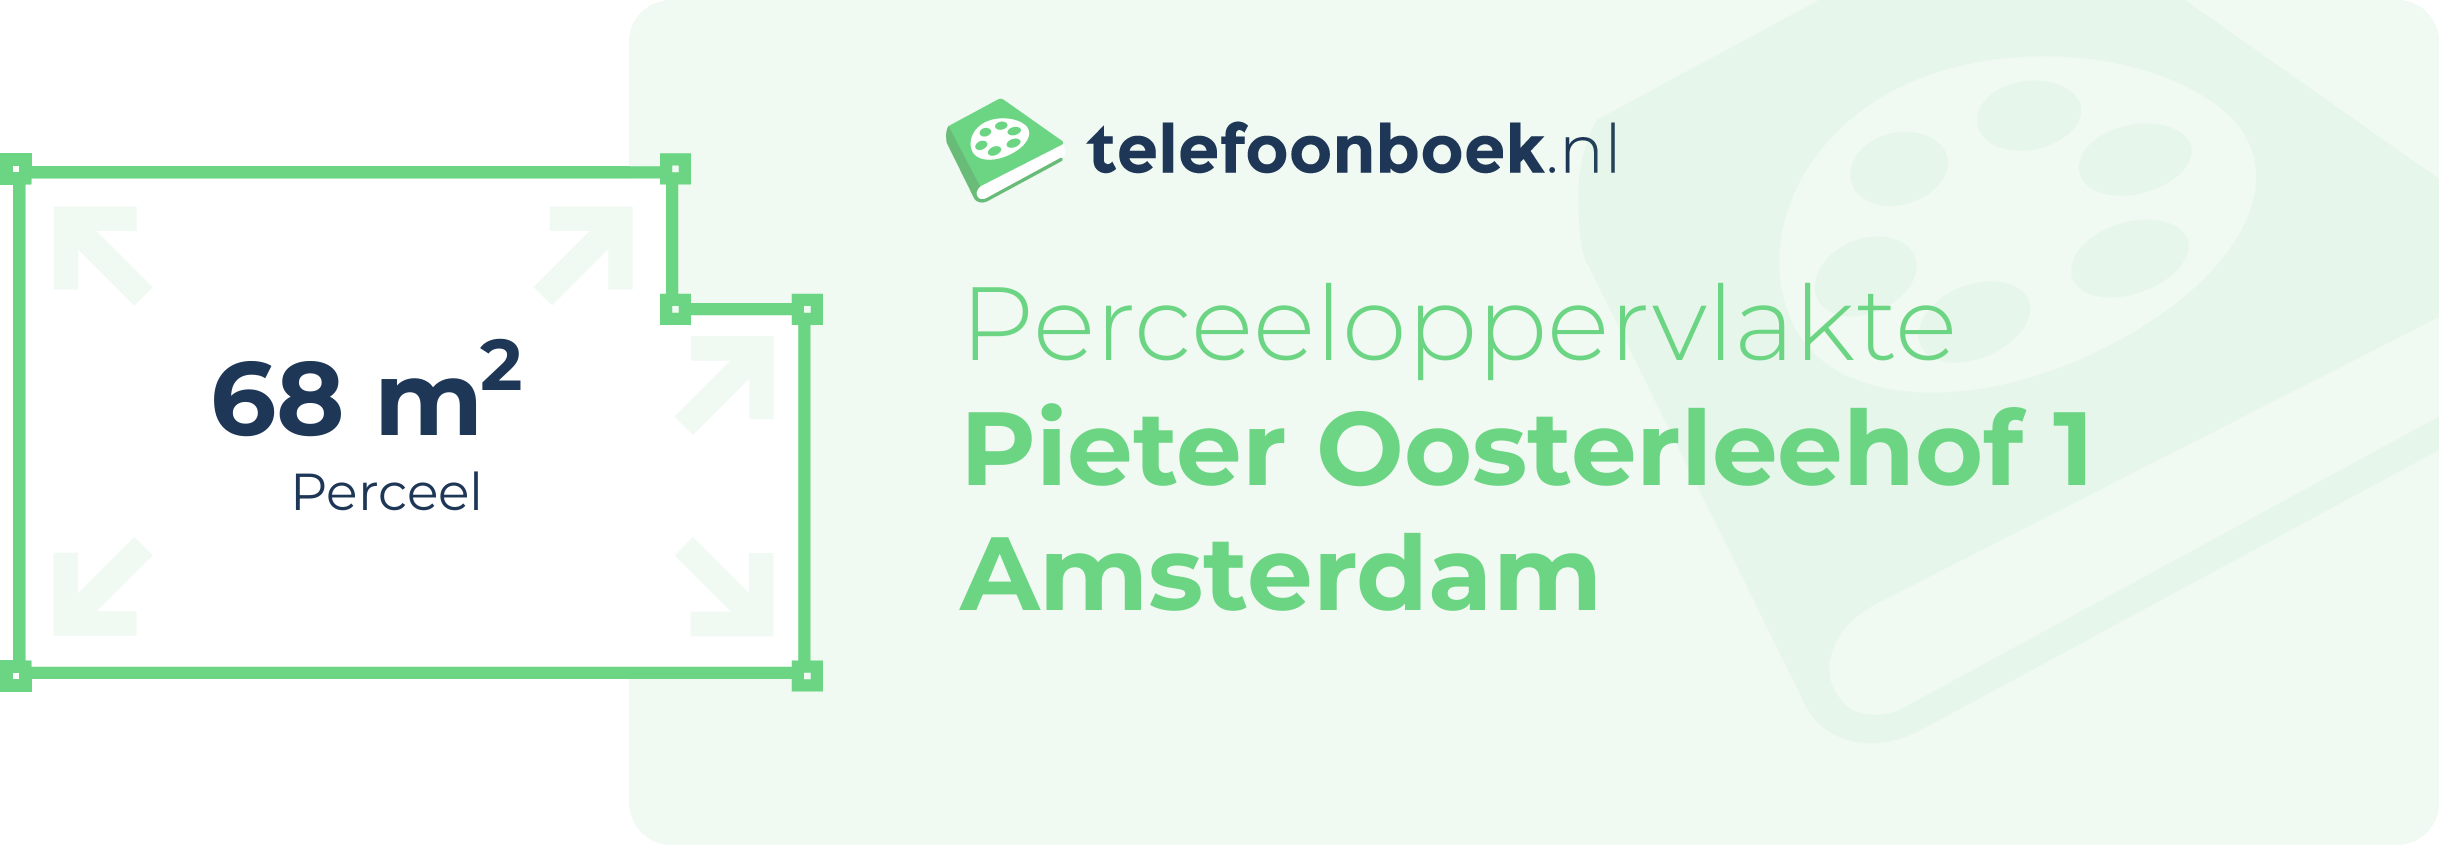 Perceeloppervlakte Pieter Oosterleehof 1 Amsterdam